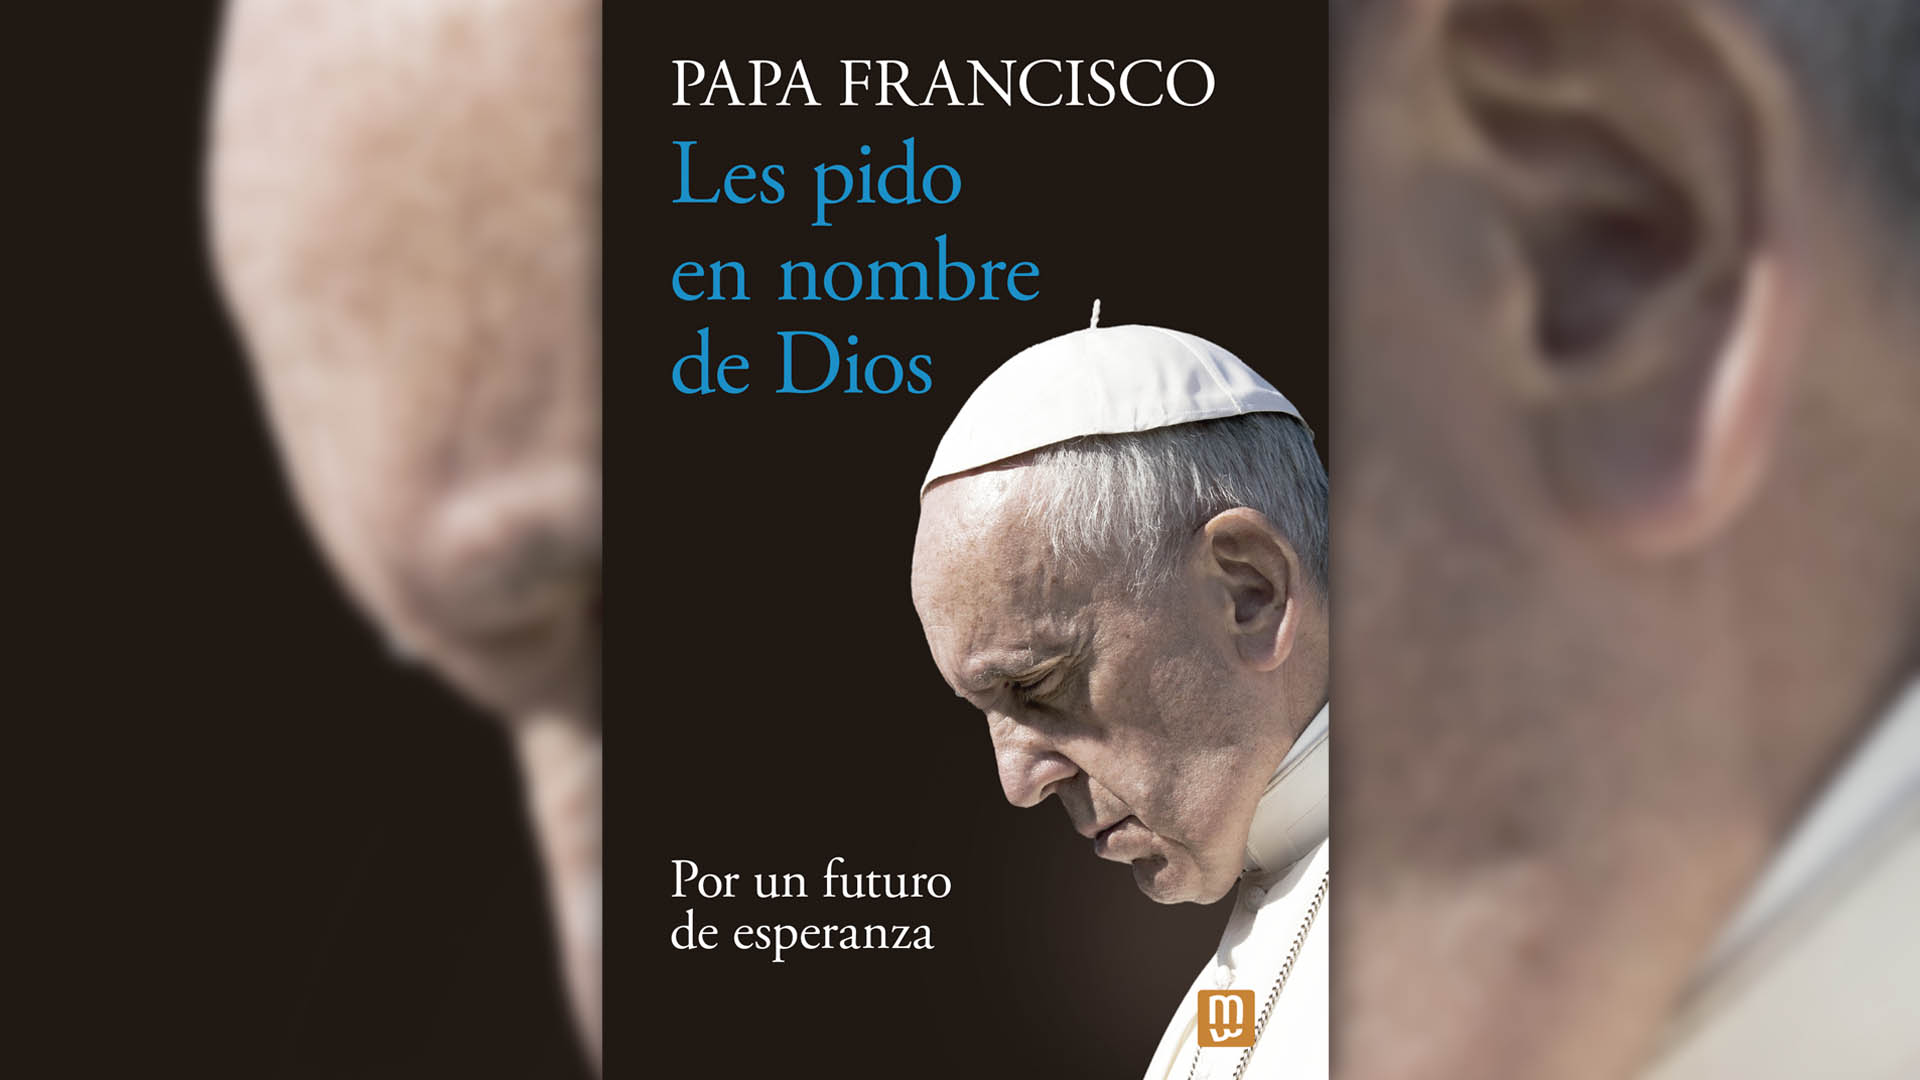 Diez frases del papa Francisco en su nuevo libro: TikTok, abusos sexuales  en la Iglesia y la urgencia climática - Infobae